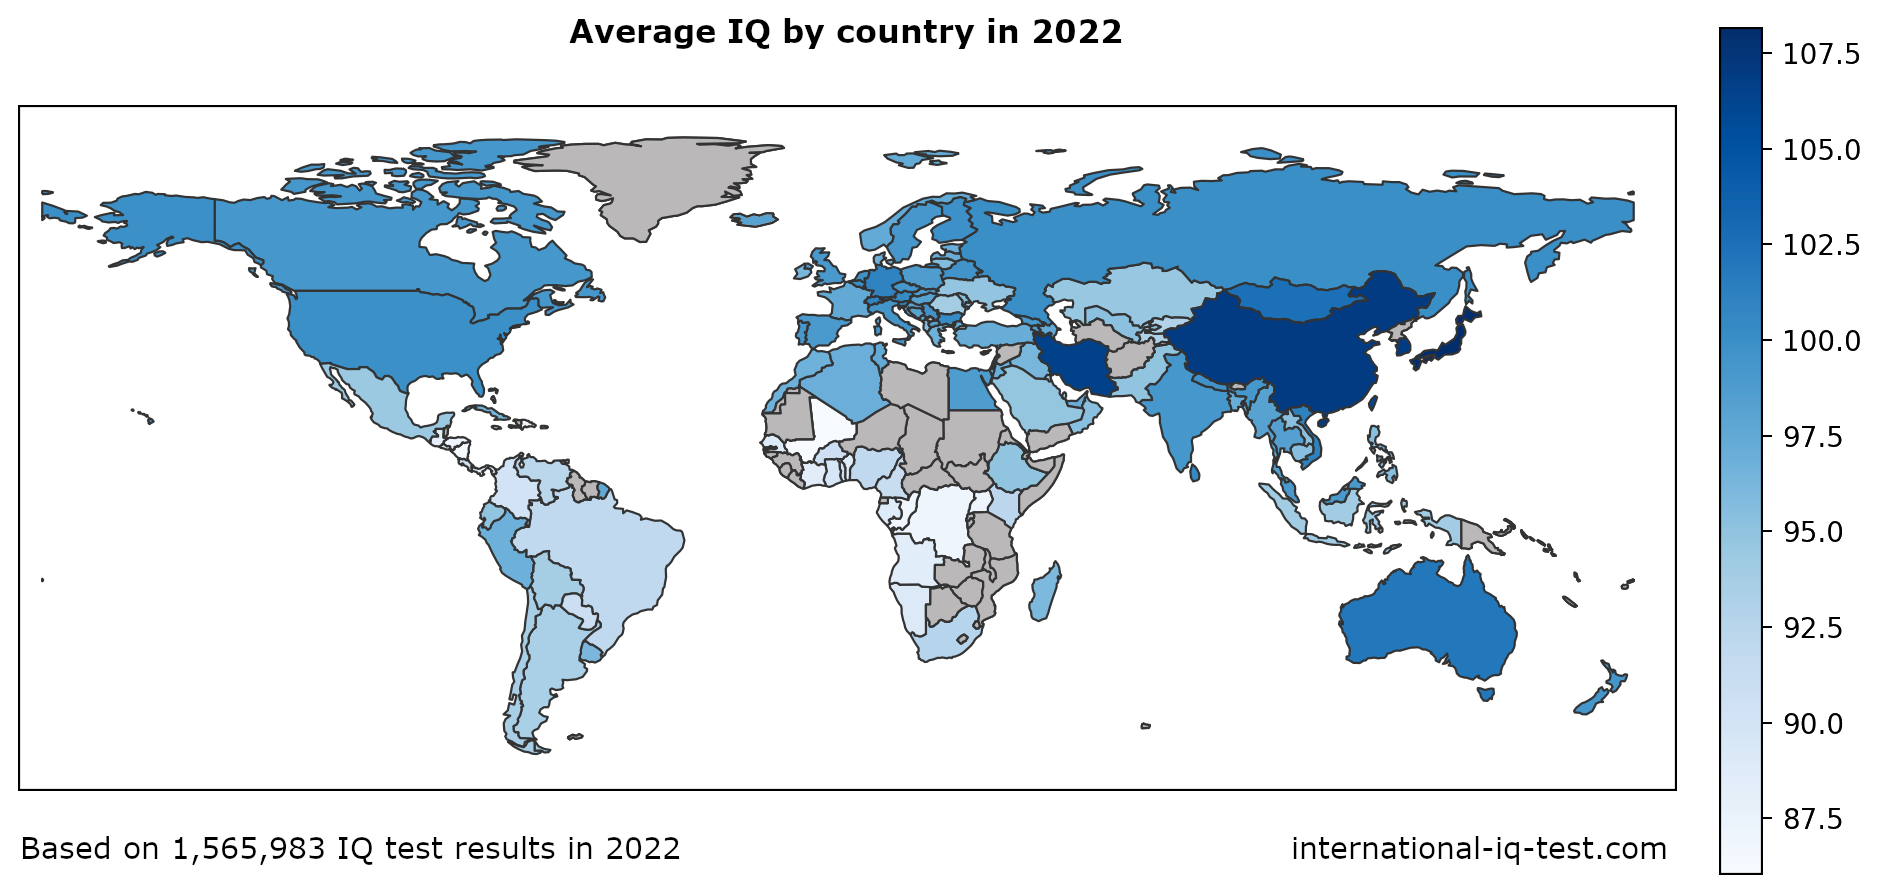 Wereldkaart met het gemiddelde IQ per land in 2022 in blauwtinten van licht naar donker